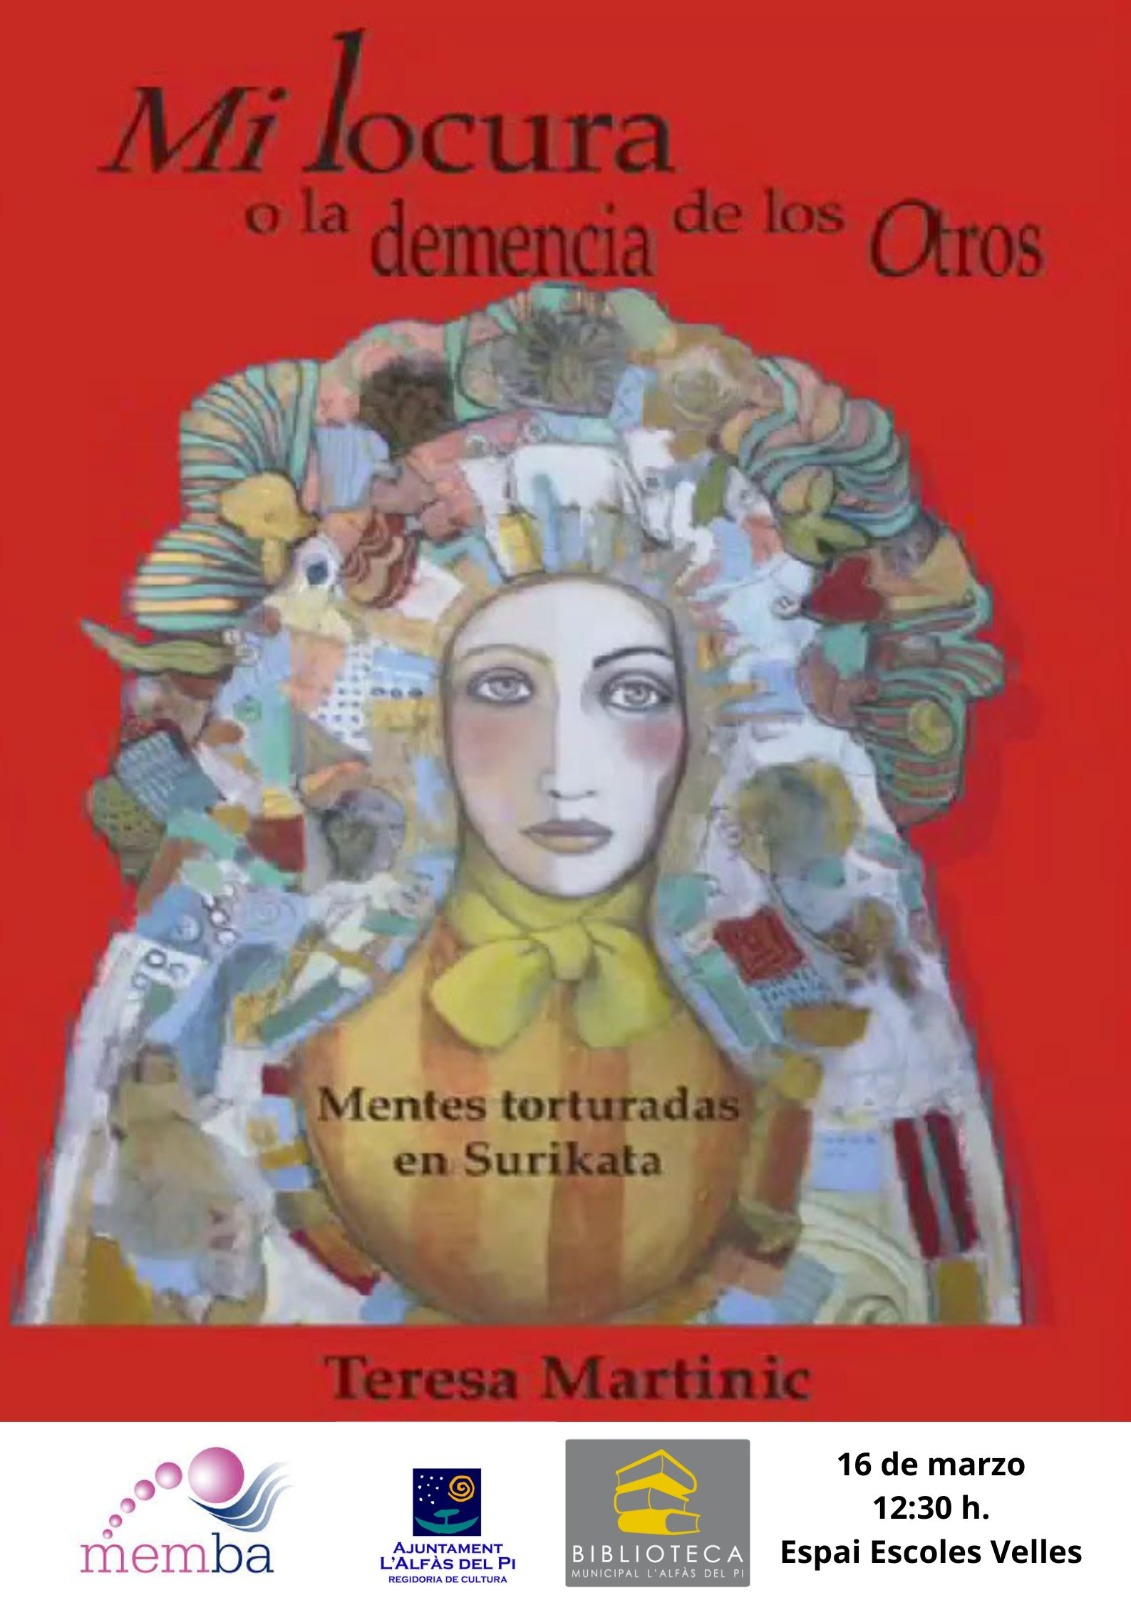 Memba organiza la presentación del libro ‘Mi locura o la demencia de otros’ de Teresa Martinic